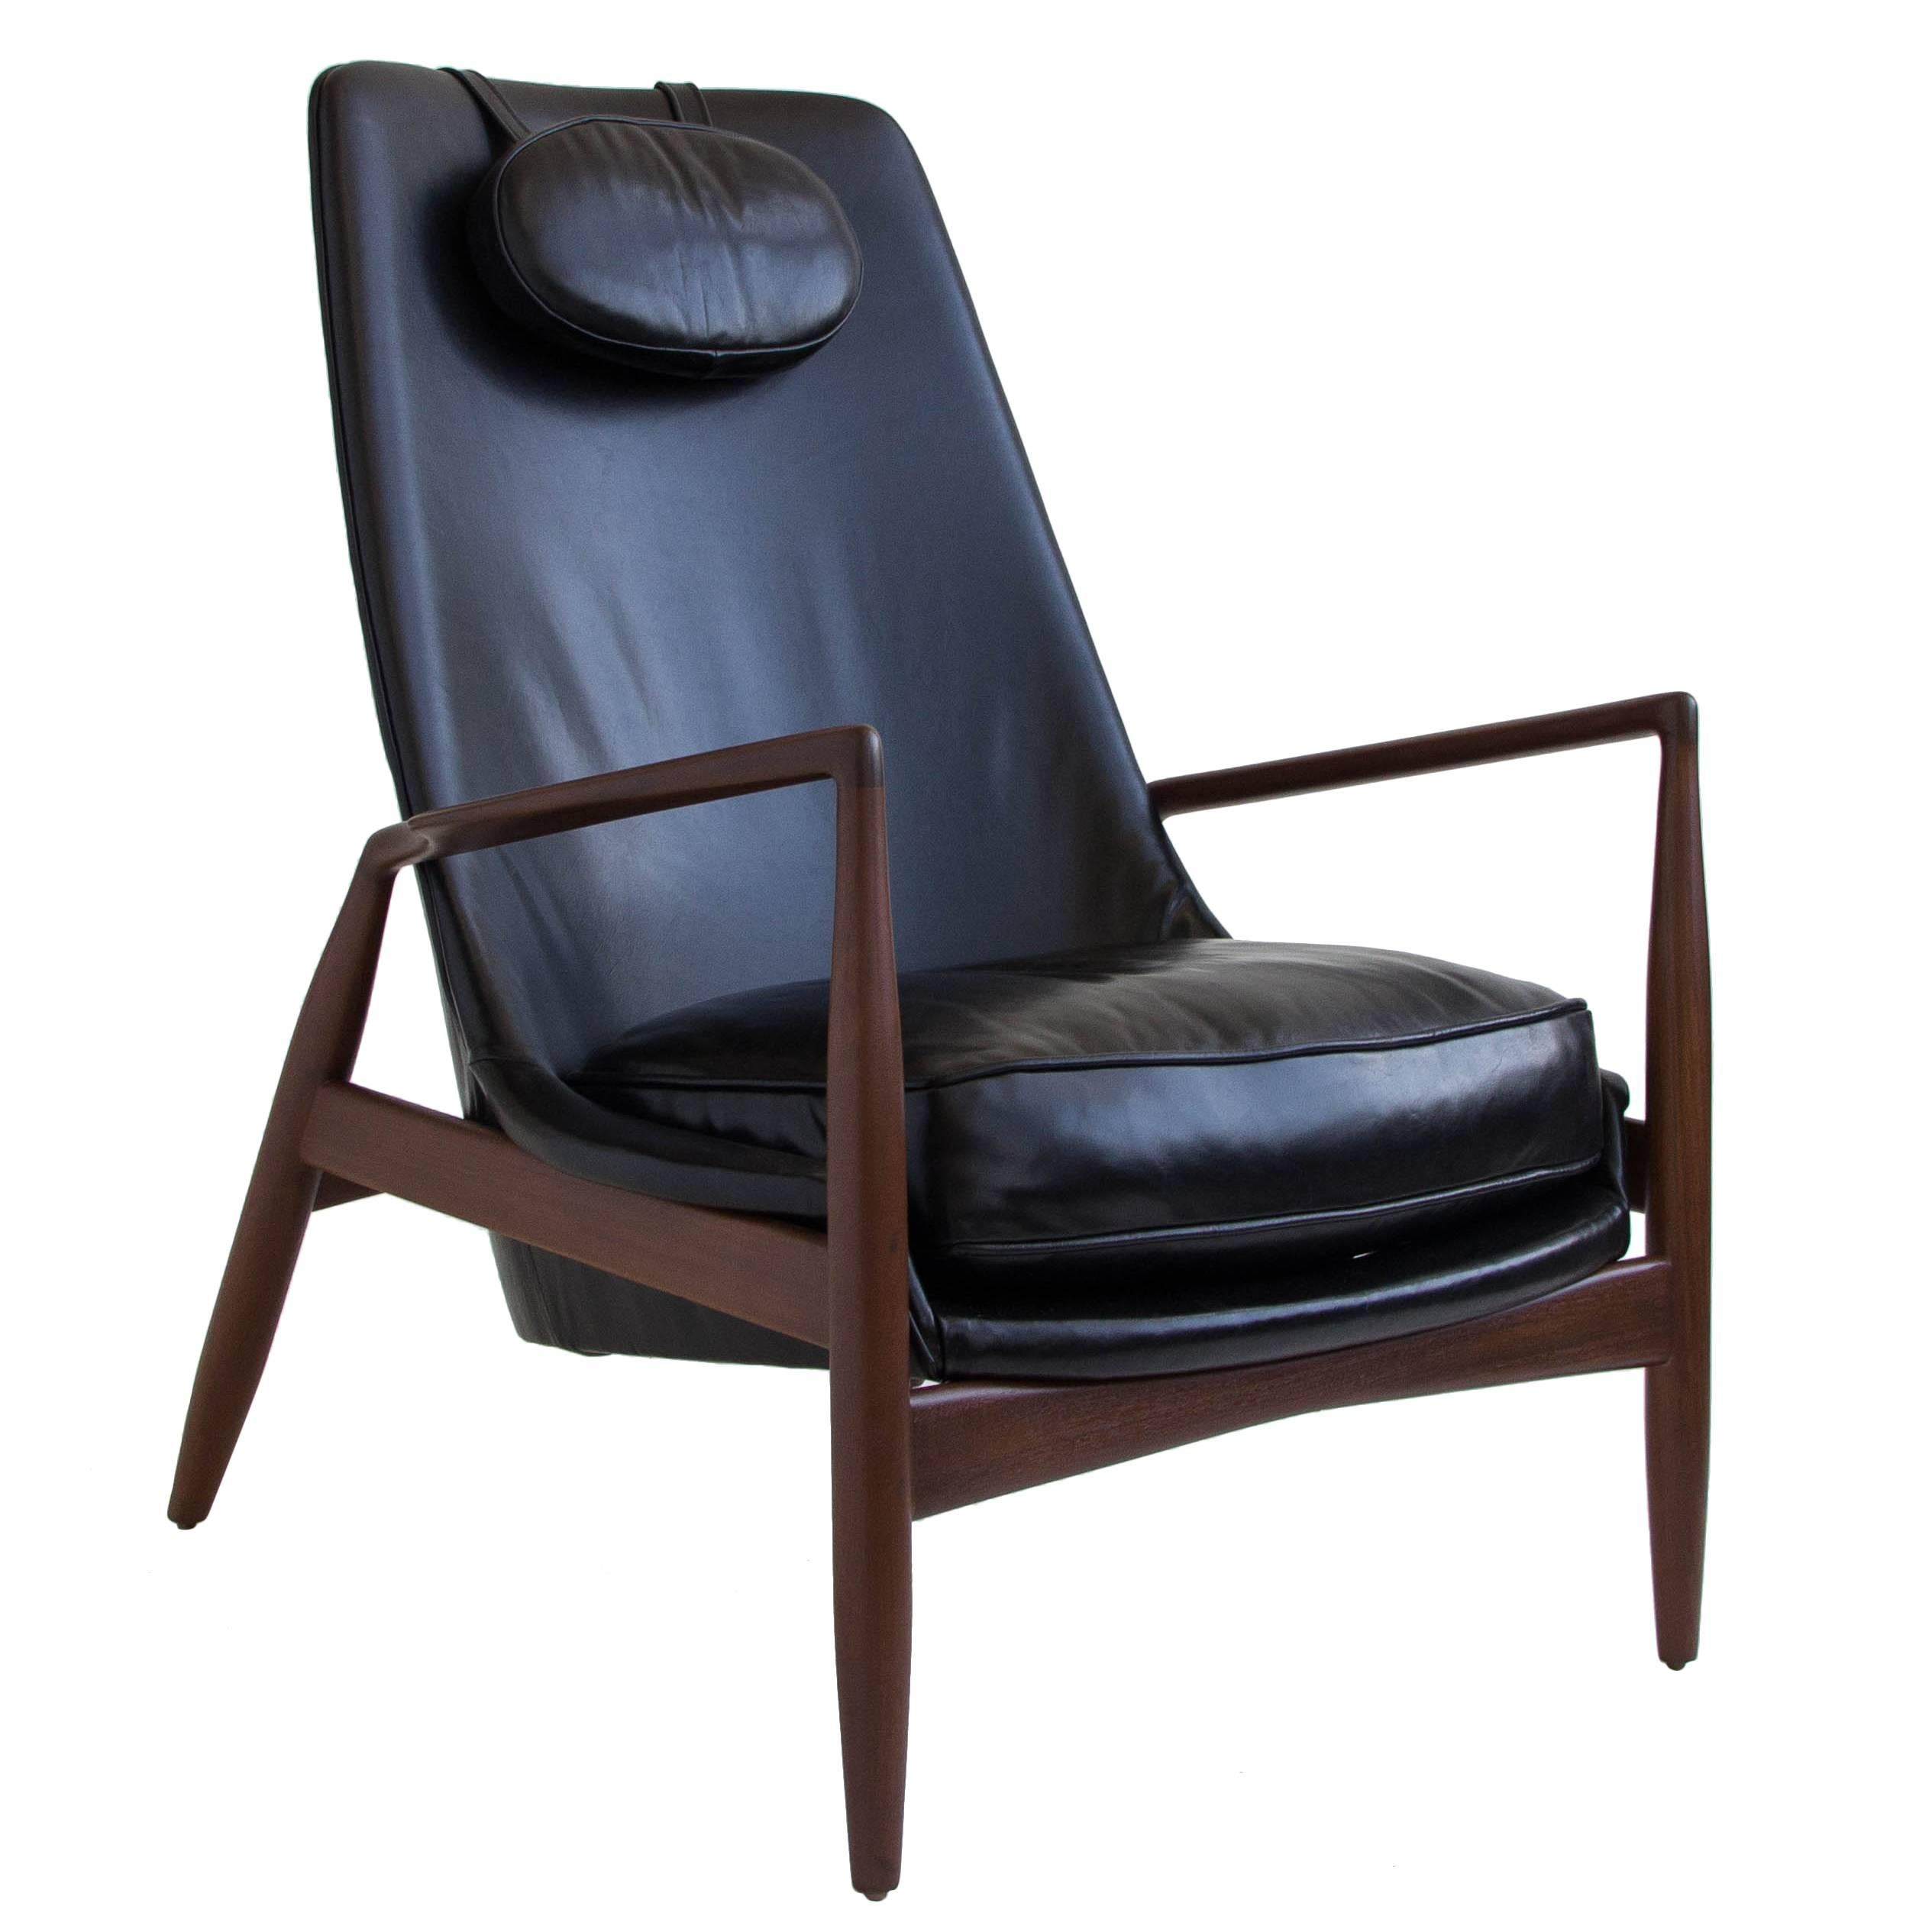 Ib Kofod-Larsen Seal Chair